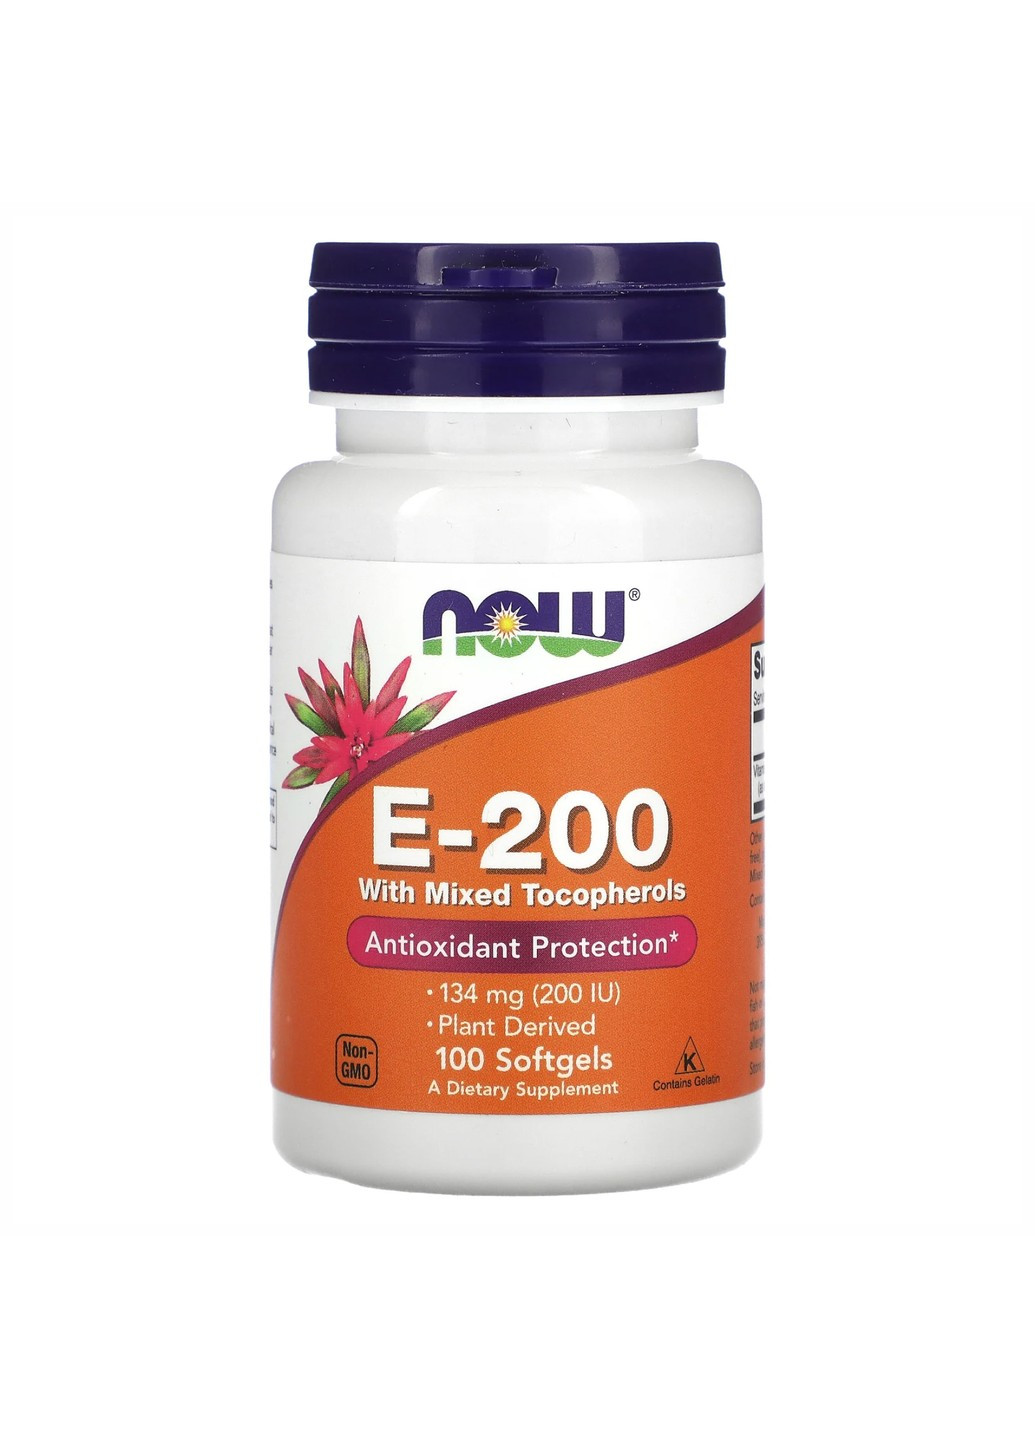 Вітамін E-200 зі Змішаними Токоферолами E-200 Mixed Tocopherols - 100 софтгель Now Foods (276903952)